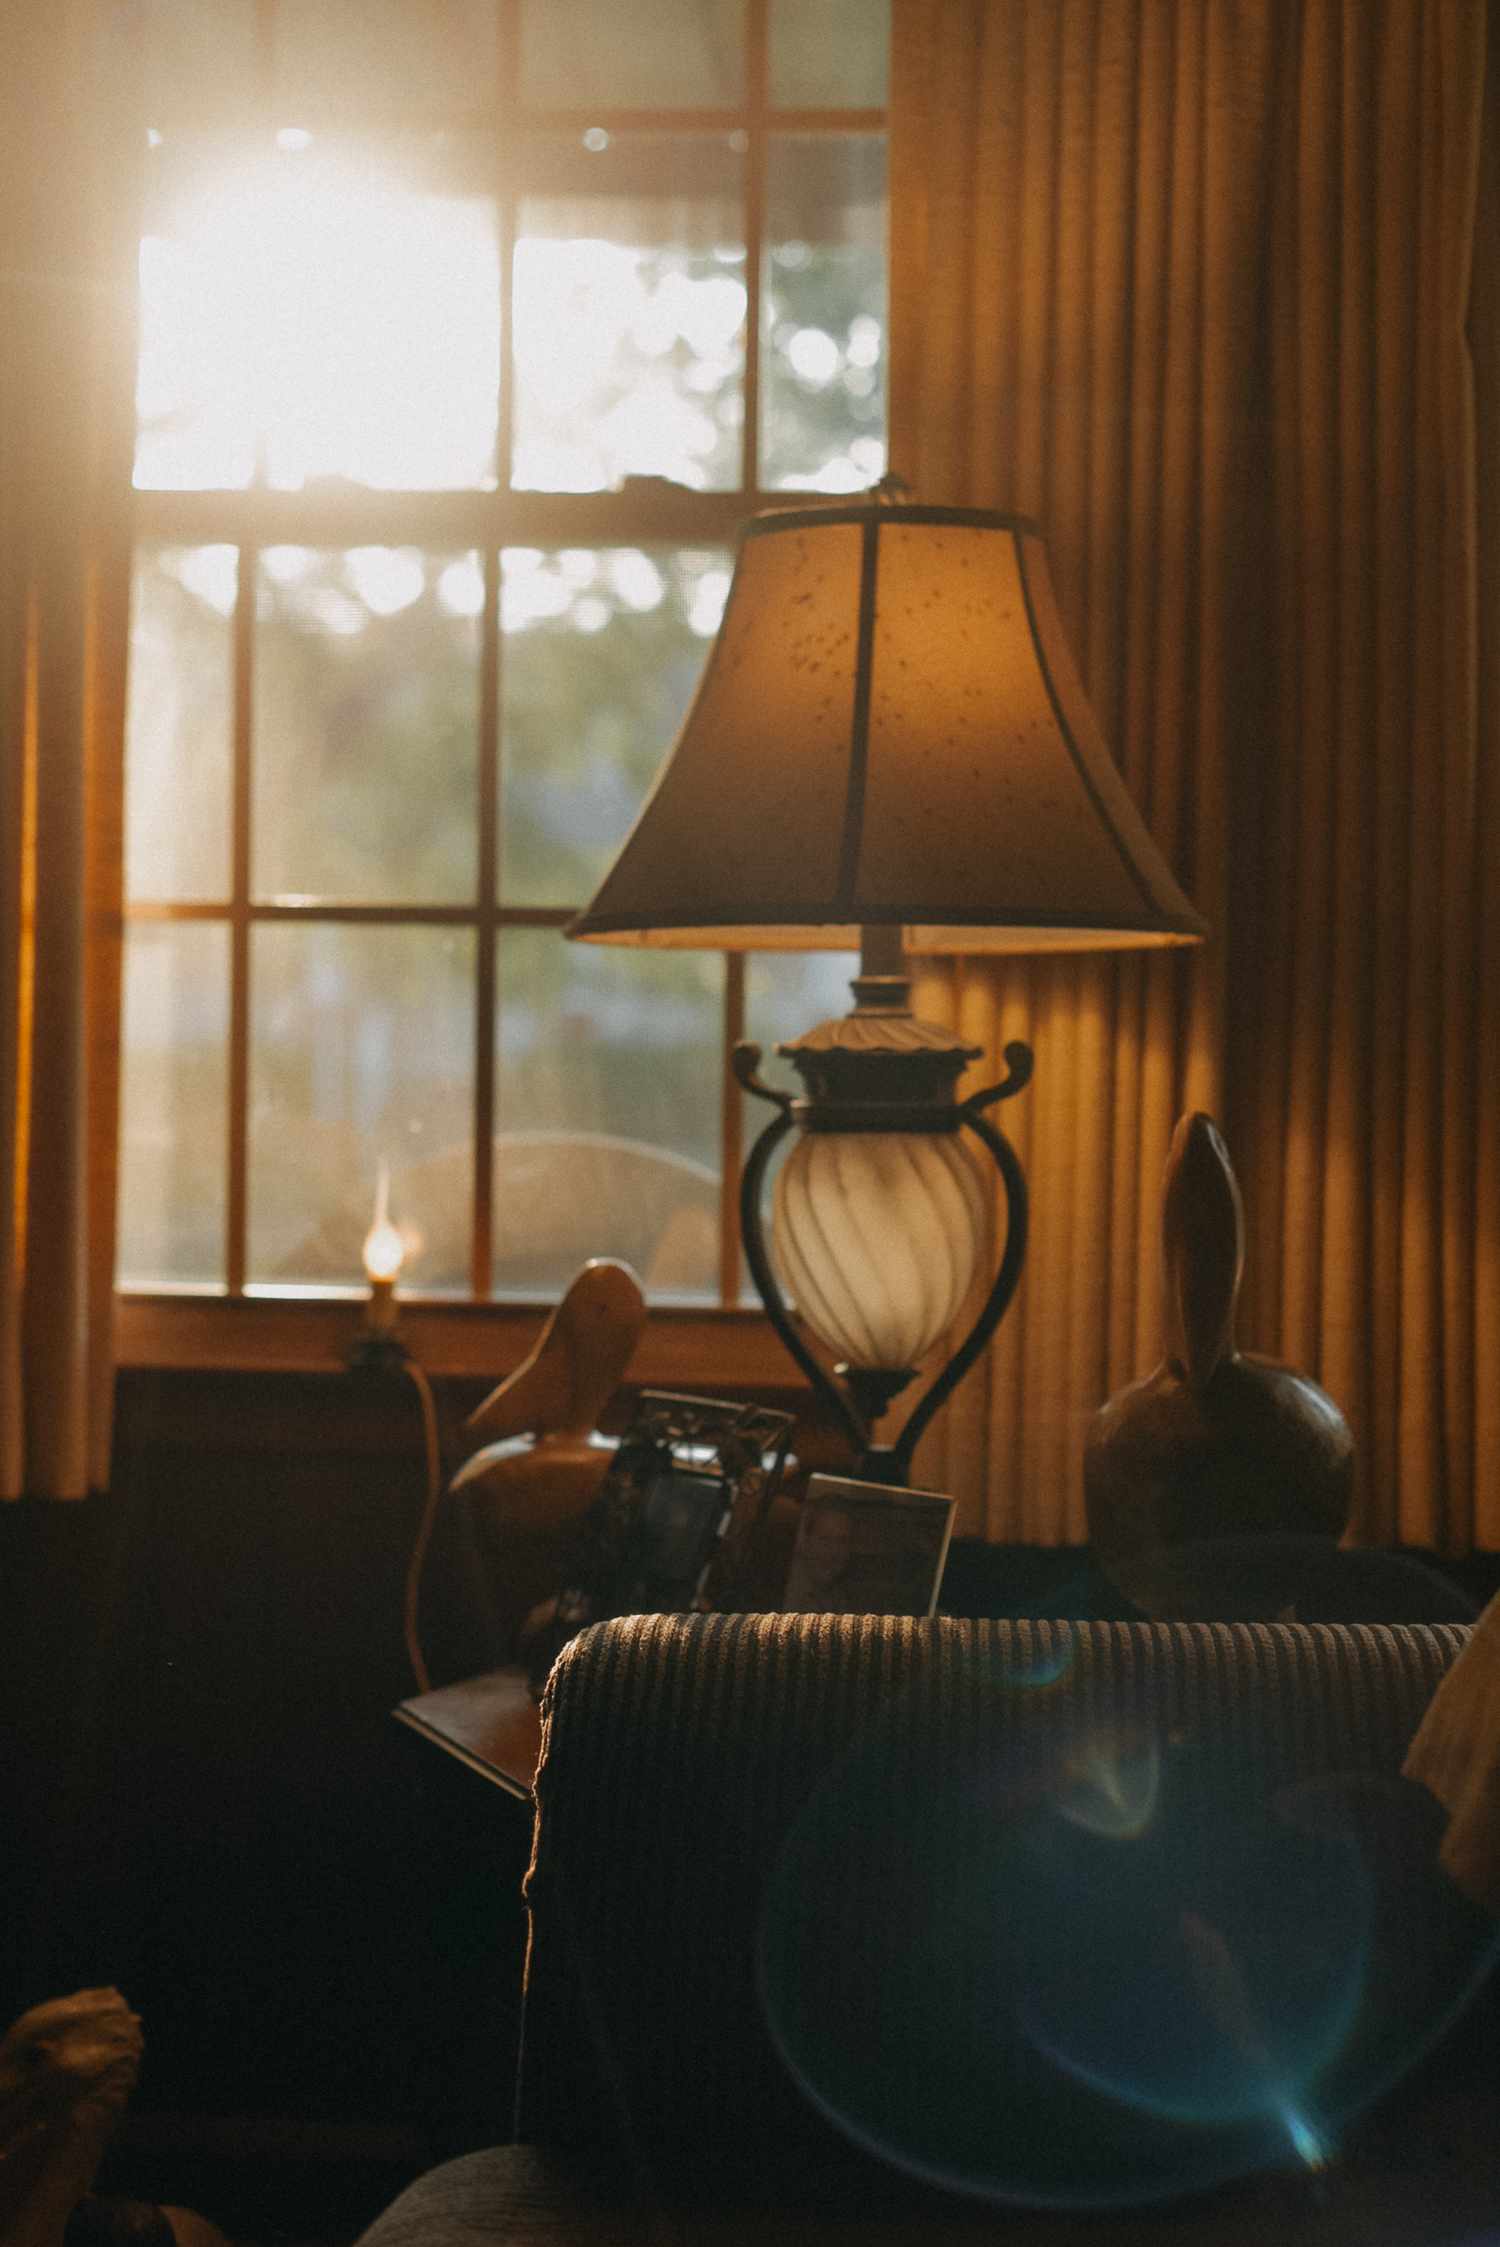 Lampe vor einem Fenster mit Vorhängen